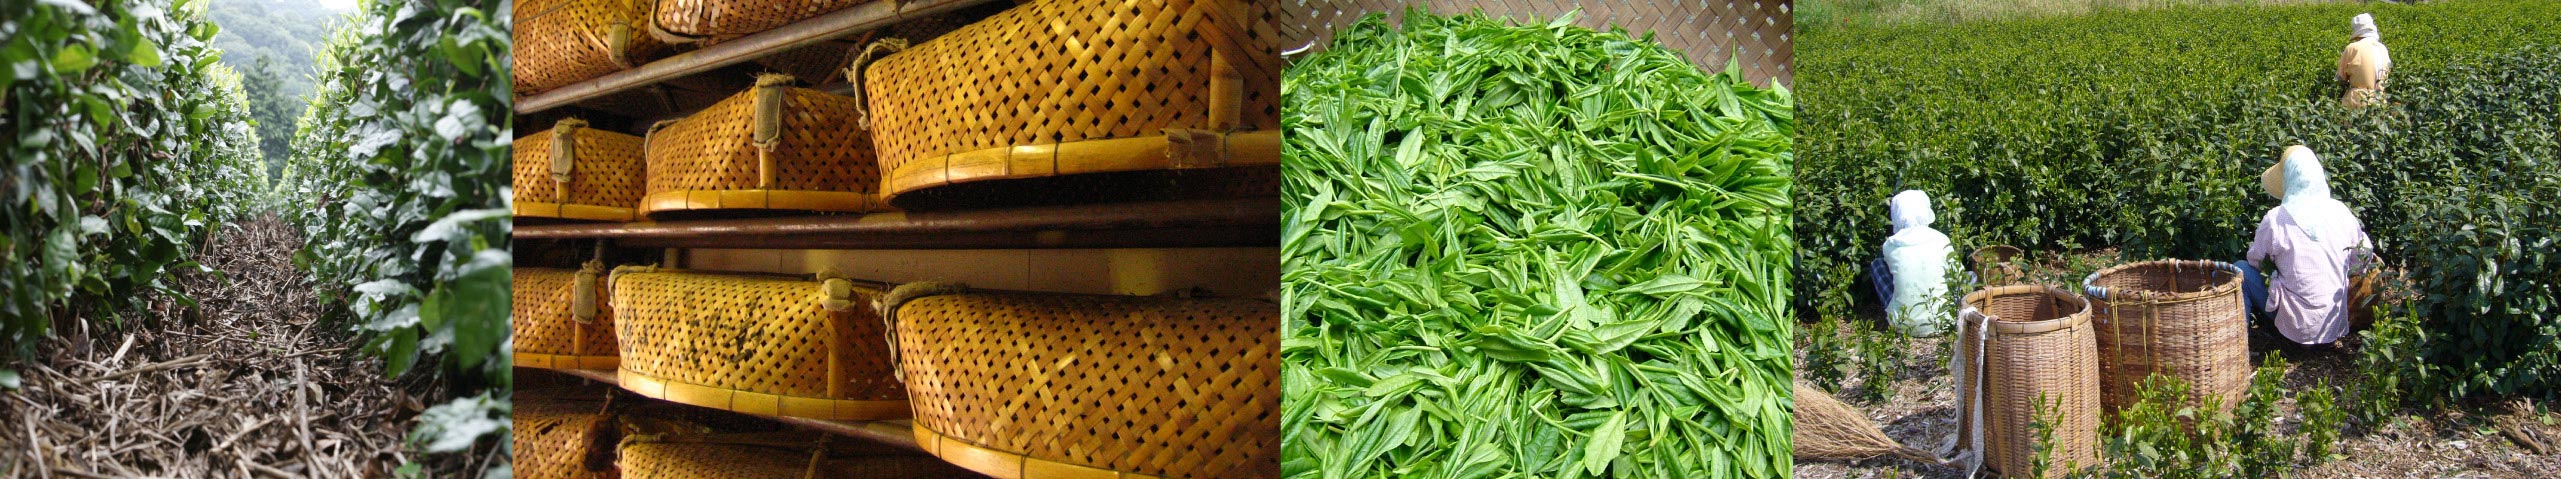 静岡の茶草場農法、農具、収穫された茶葉と農作業をする人々